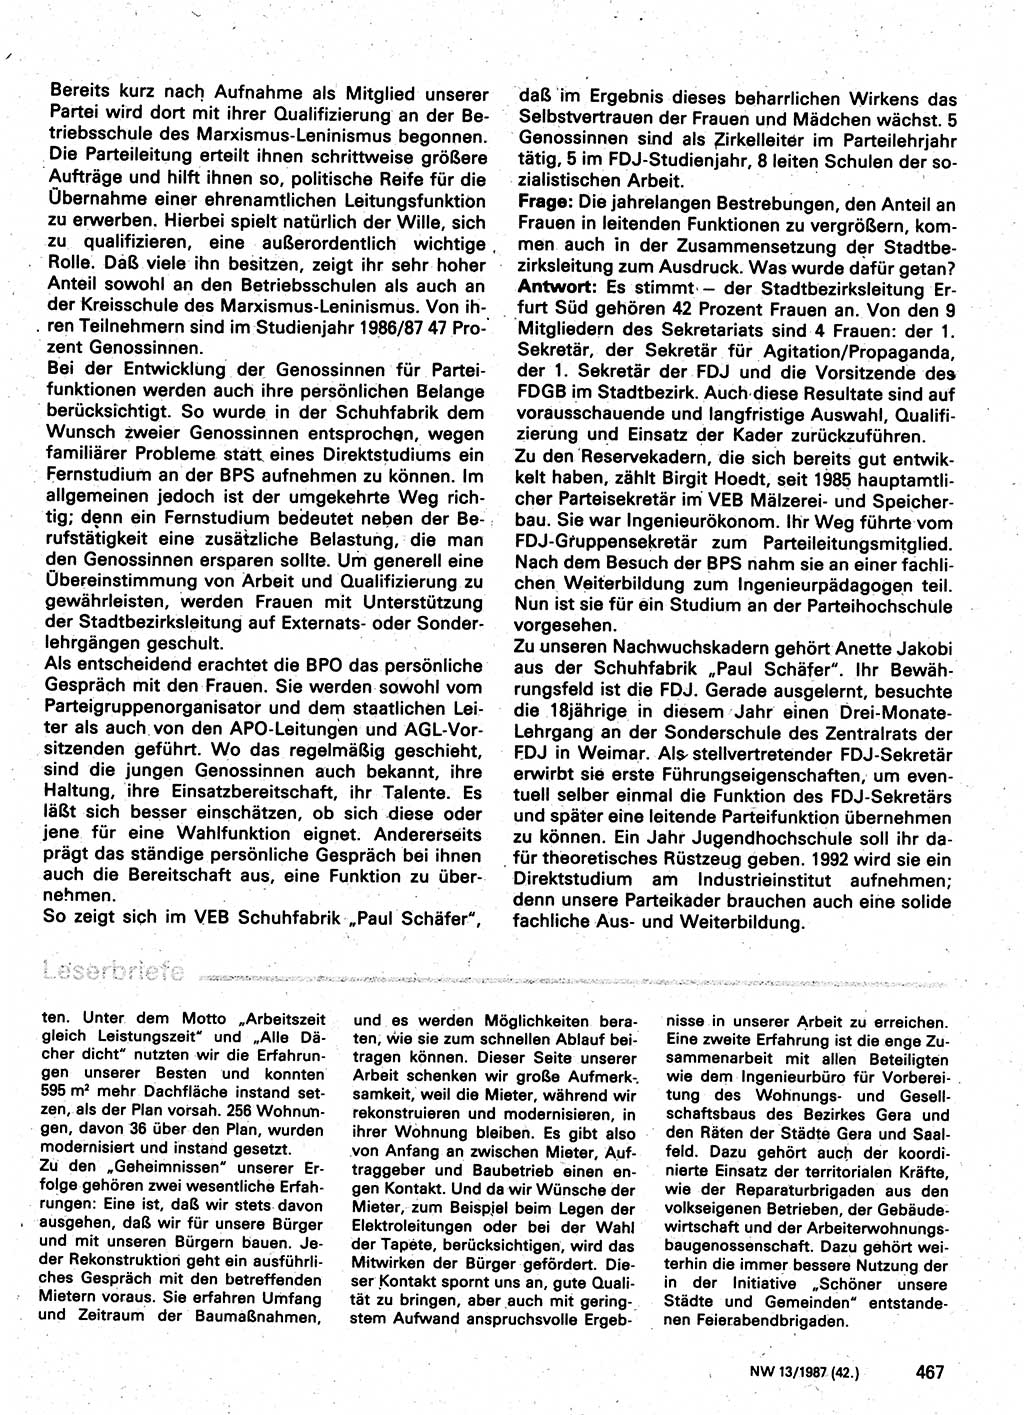 Neuer Weg (NW), Organ des Zentralkomitees (ZK) der SED (Sozialistische Einheitspartei Deutschlands) für Fragen des Parteilebens, 42. Jahrgang [Deutsche Demokratische Republik (DDR)] 1987, Seite 467 (NW ZK SED DDR 1987, S. 467)